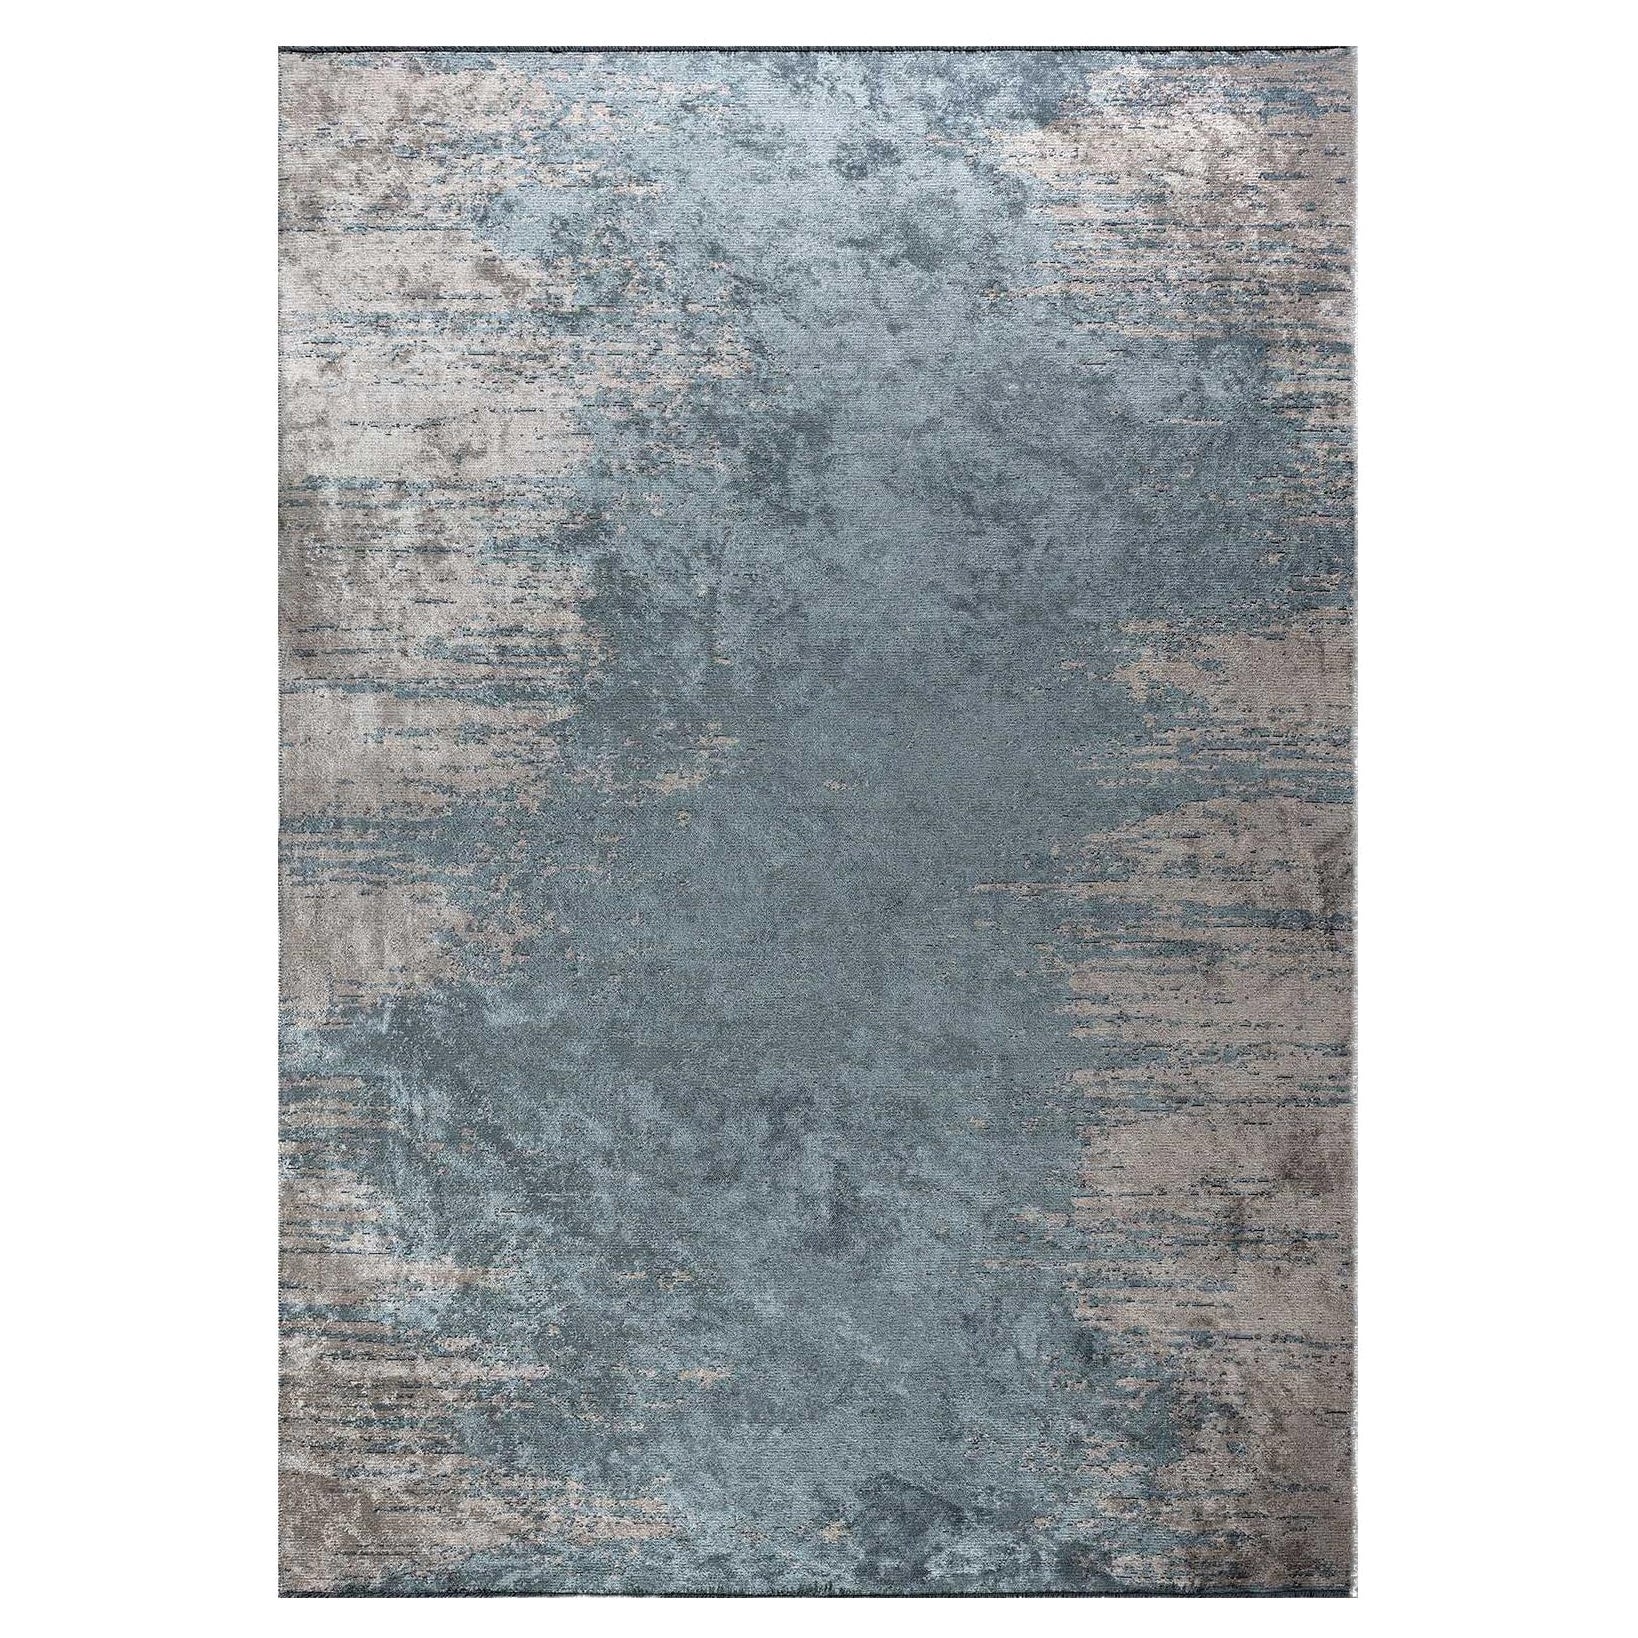 Tapis chenille moderne bleu clair et argenté abstrait sans frange prêt à expédier